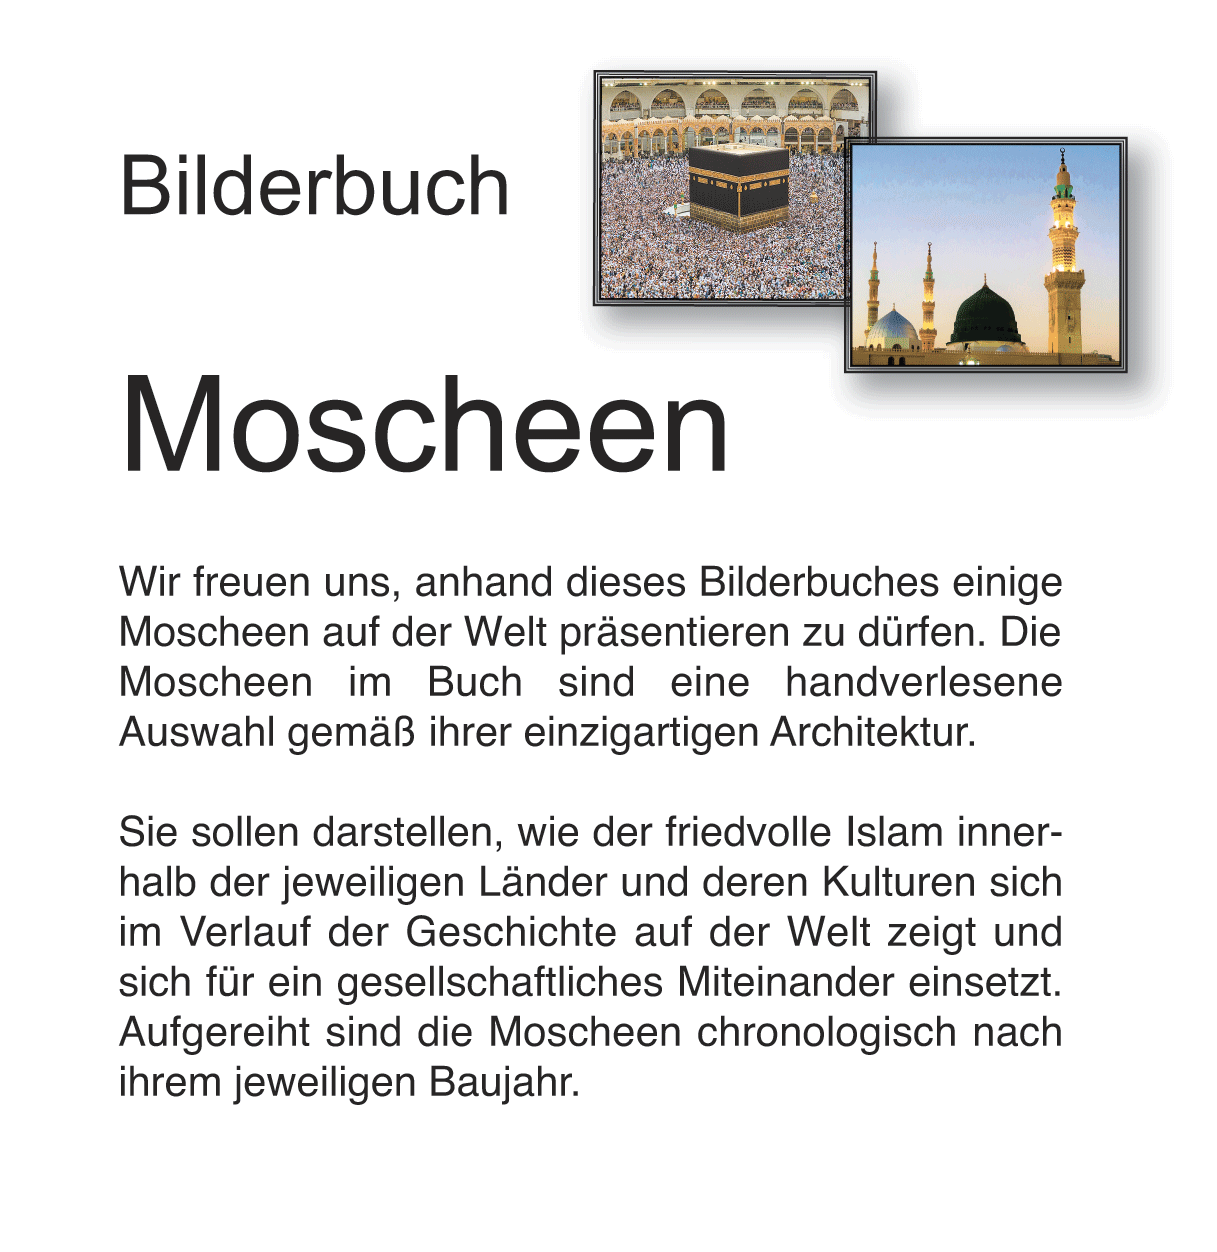 Bilderbuch Moscheen als E-Book